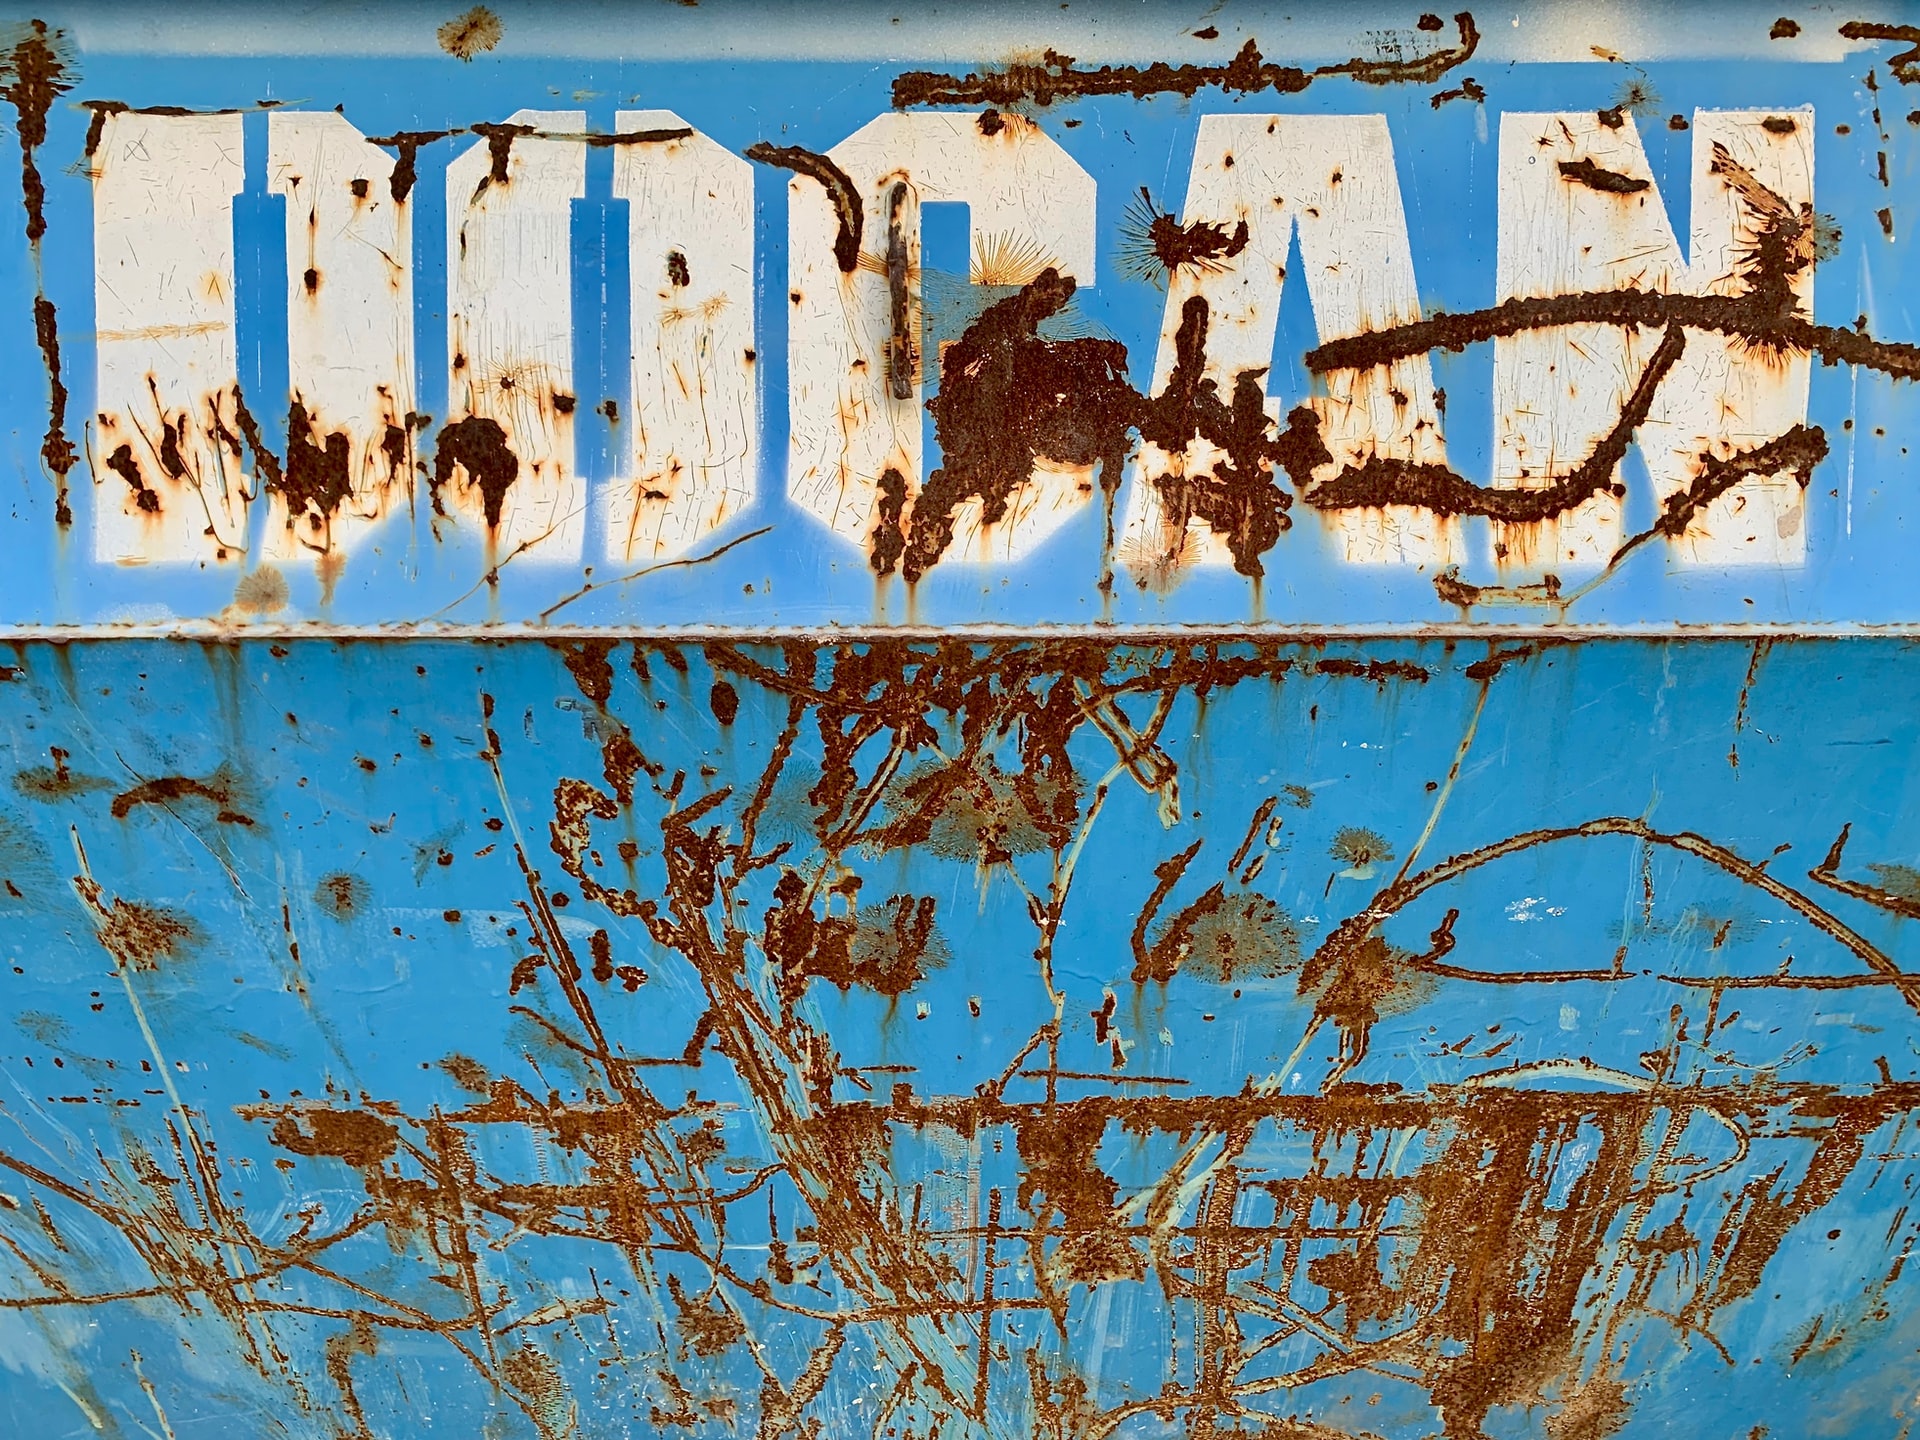 Vuilcontainer huren voor gemengd afval, wat mag erin?